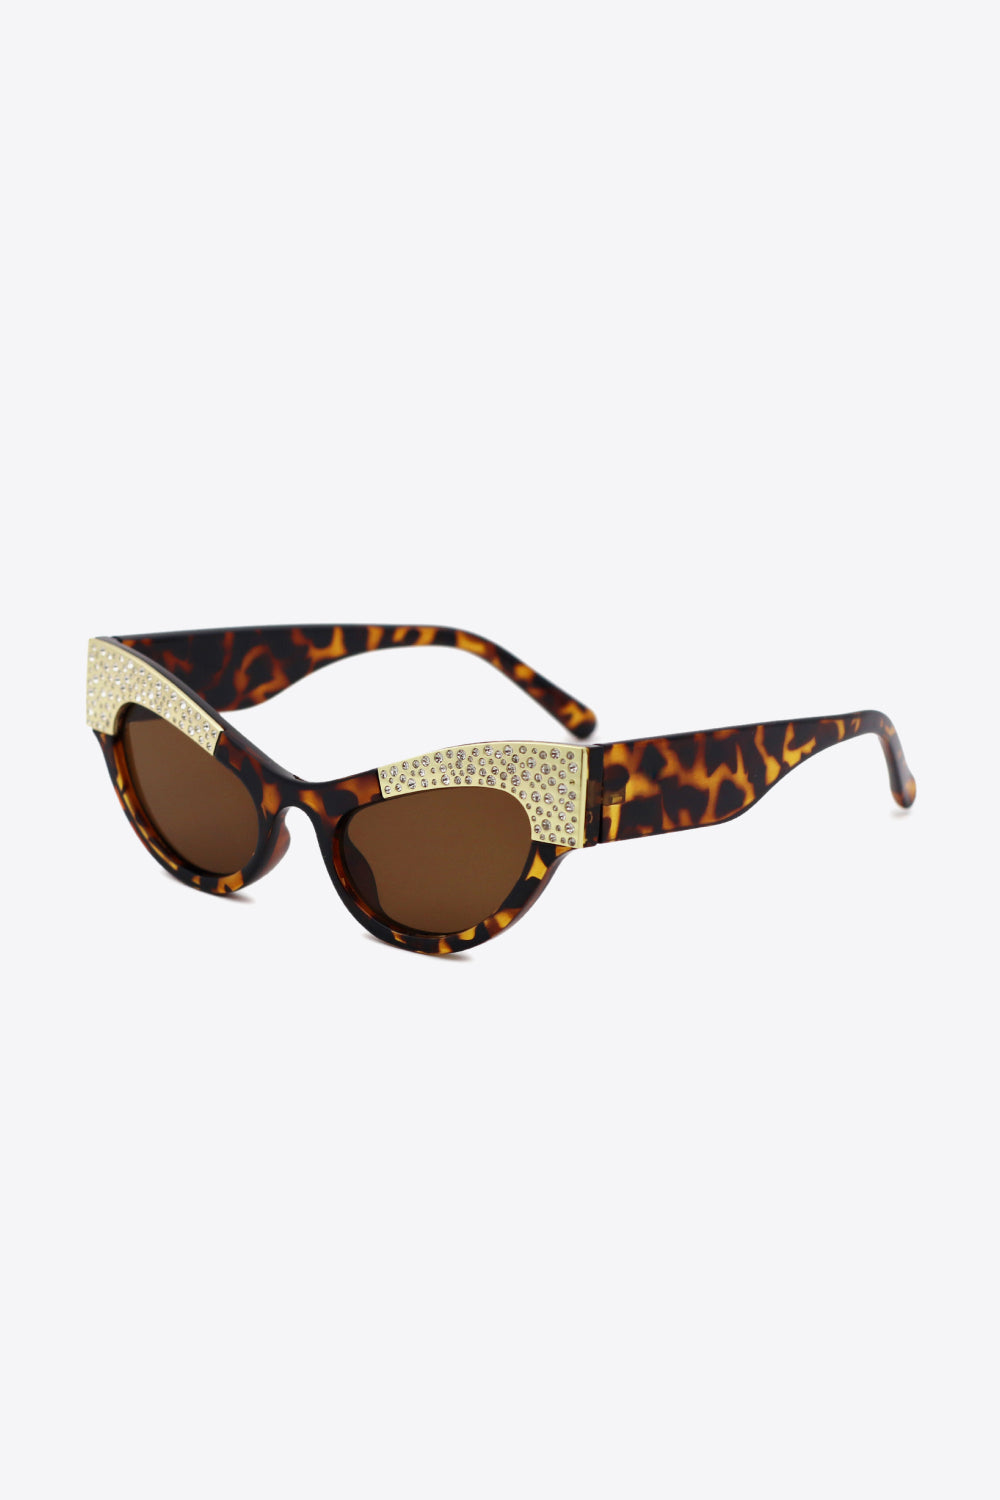 UV400 Rhinestone Trim Cat-Eye Sunglasses - Online Only